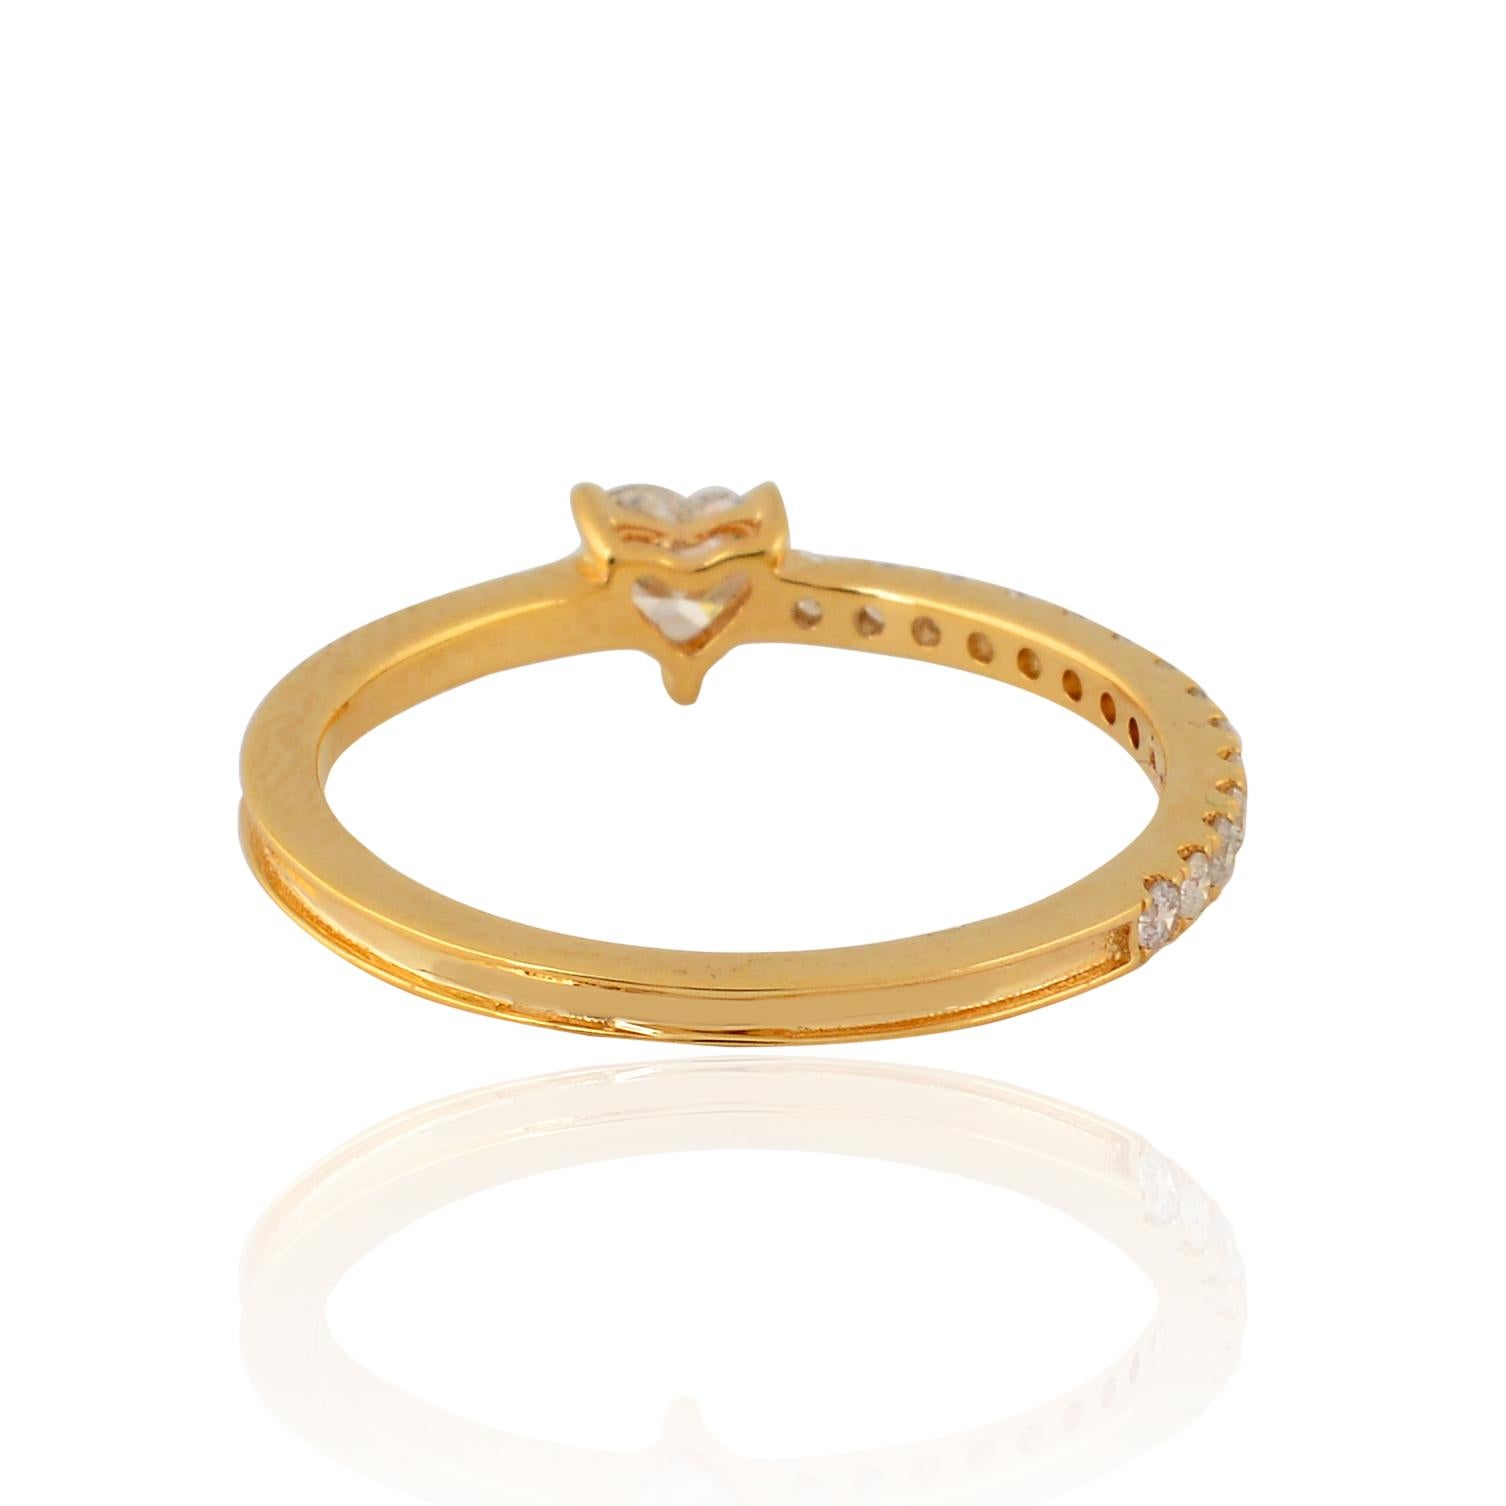 Artikel-Code :- CN-31566
Bruttogewicht :- 1.37 gm
14k Solid Gelbgold Gewicht :- 1,28 gm
Natürlicher Diamant Gewicht :- 0.46 Karat  ( DURCHSCHNITTLICHE DIAMANT-REINHEIT SI1-SI2 & FARBE H-I )
Ring Größe :- 7 US & Alle Ringgröße verfügbar

✦